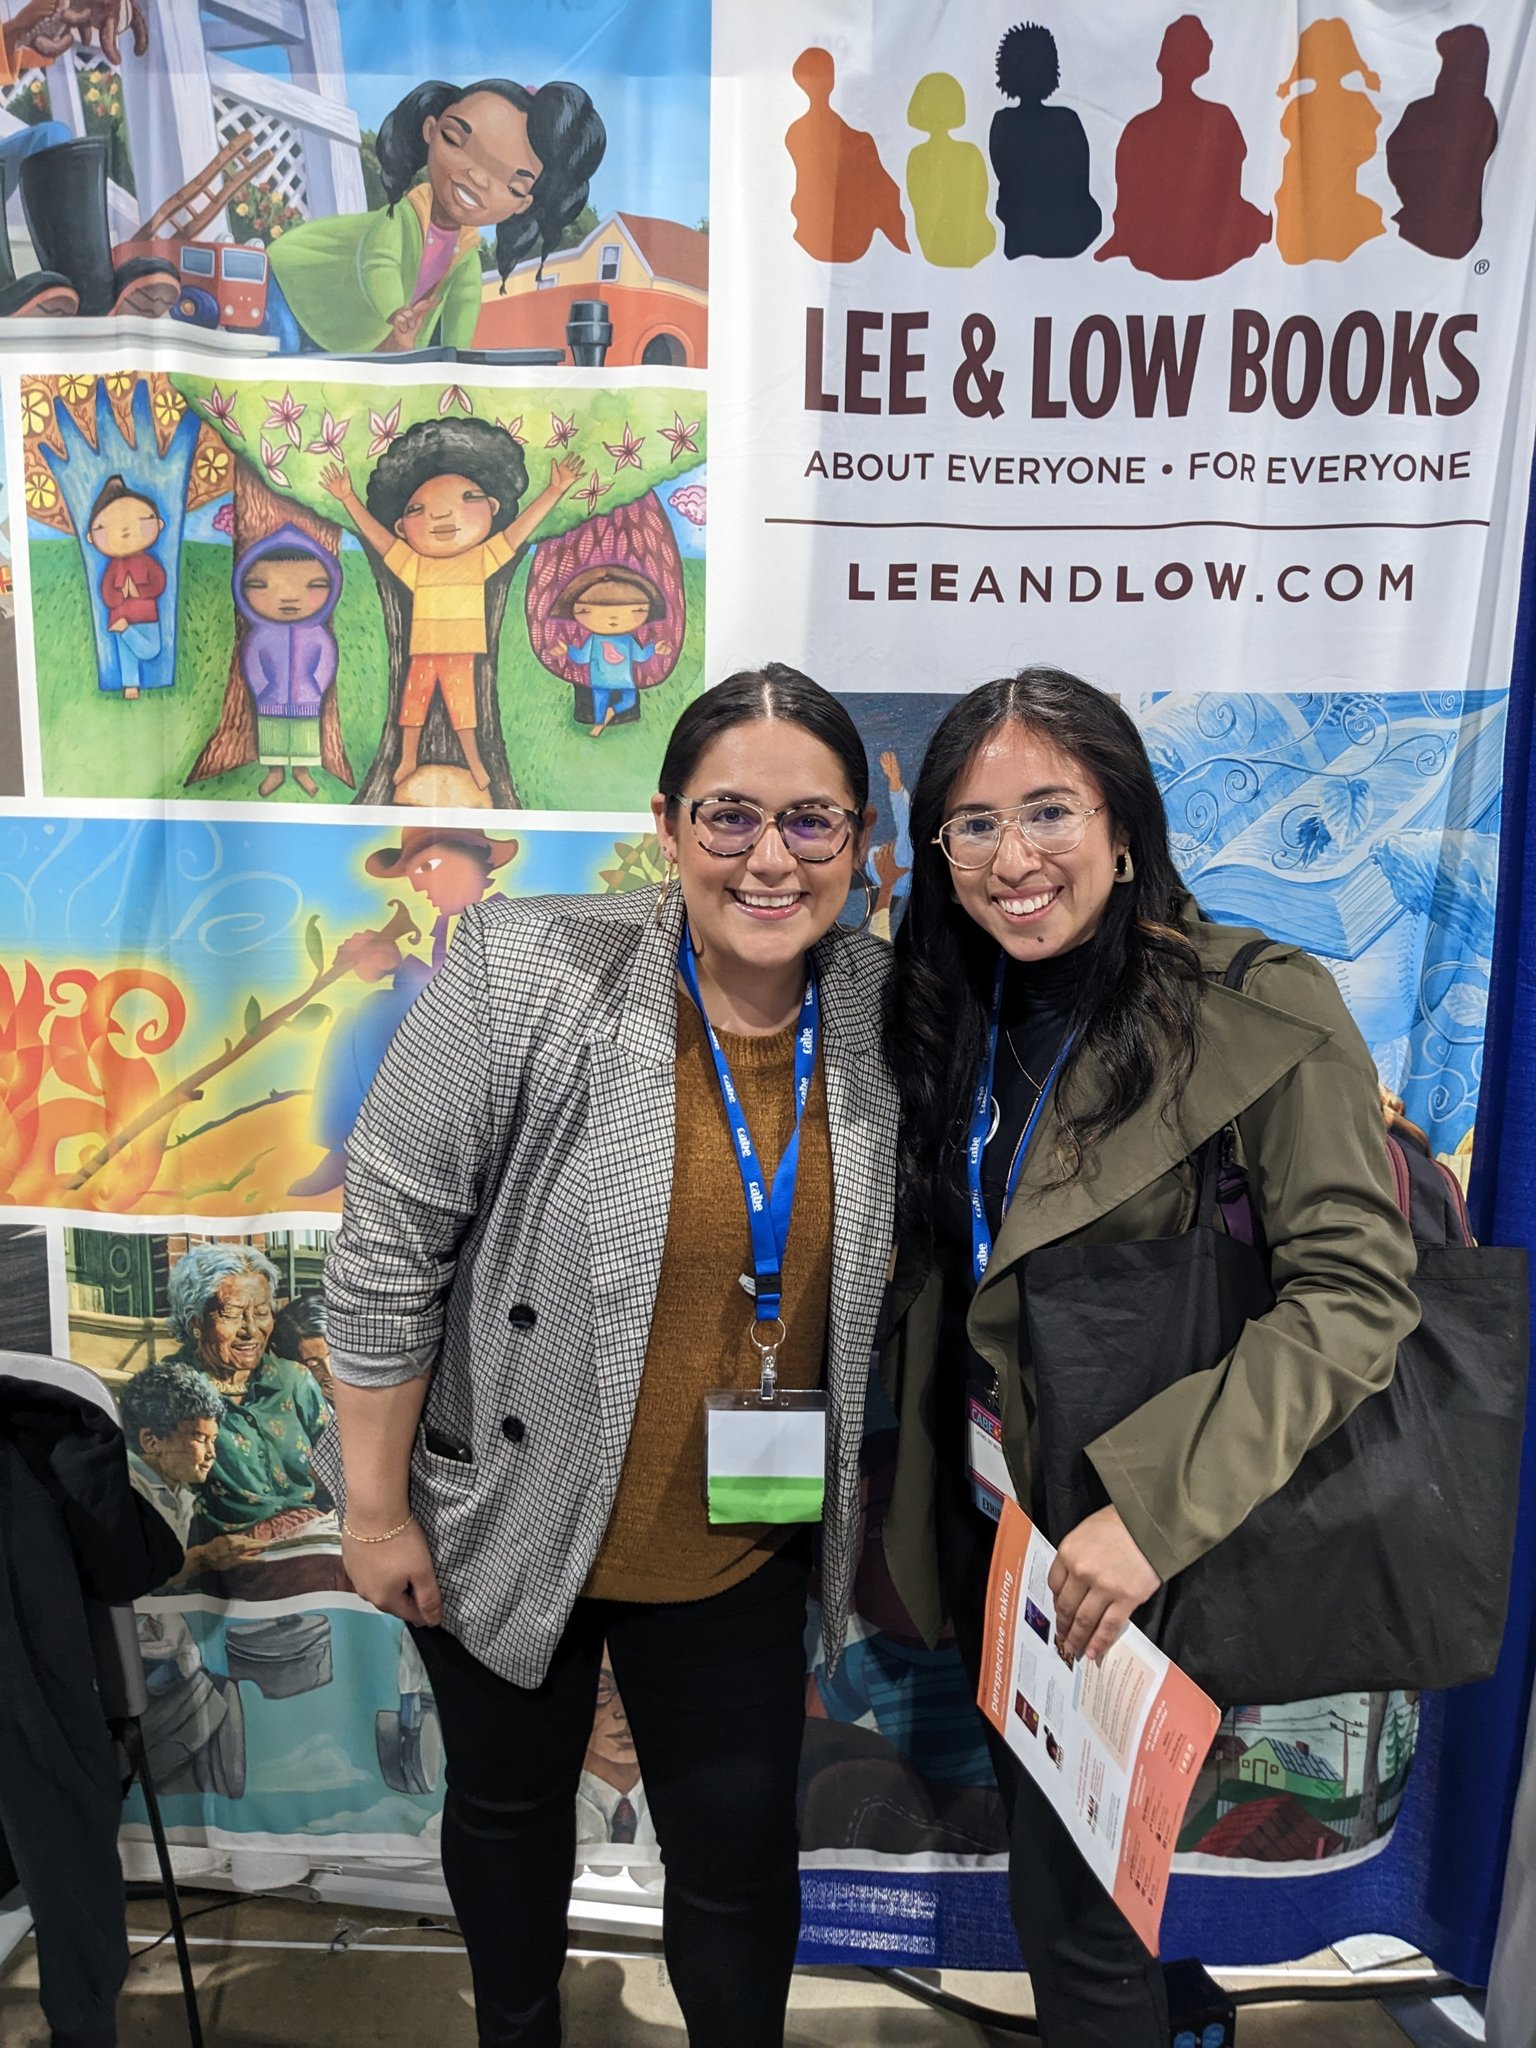 Lee & Low Books (@LEEandLOW) / Twitter